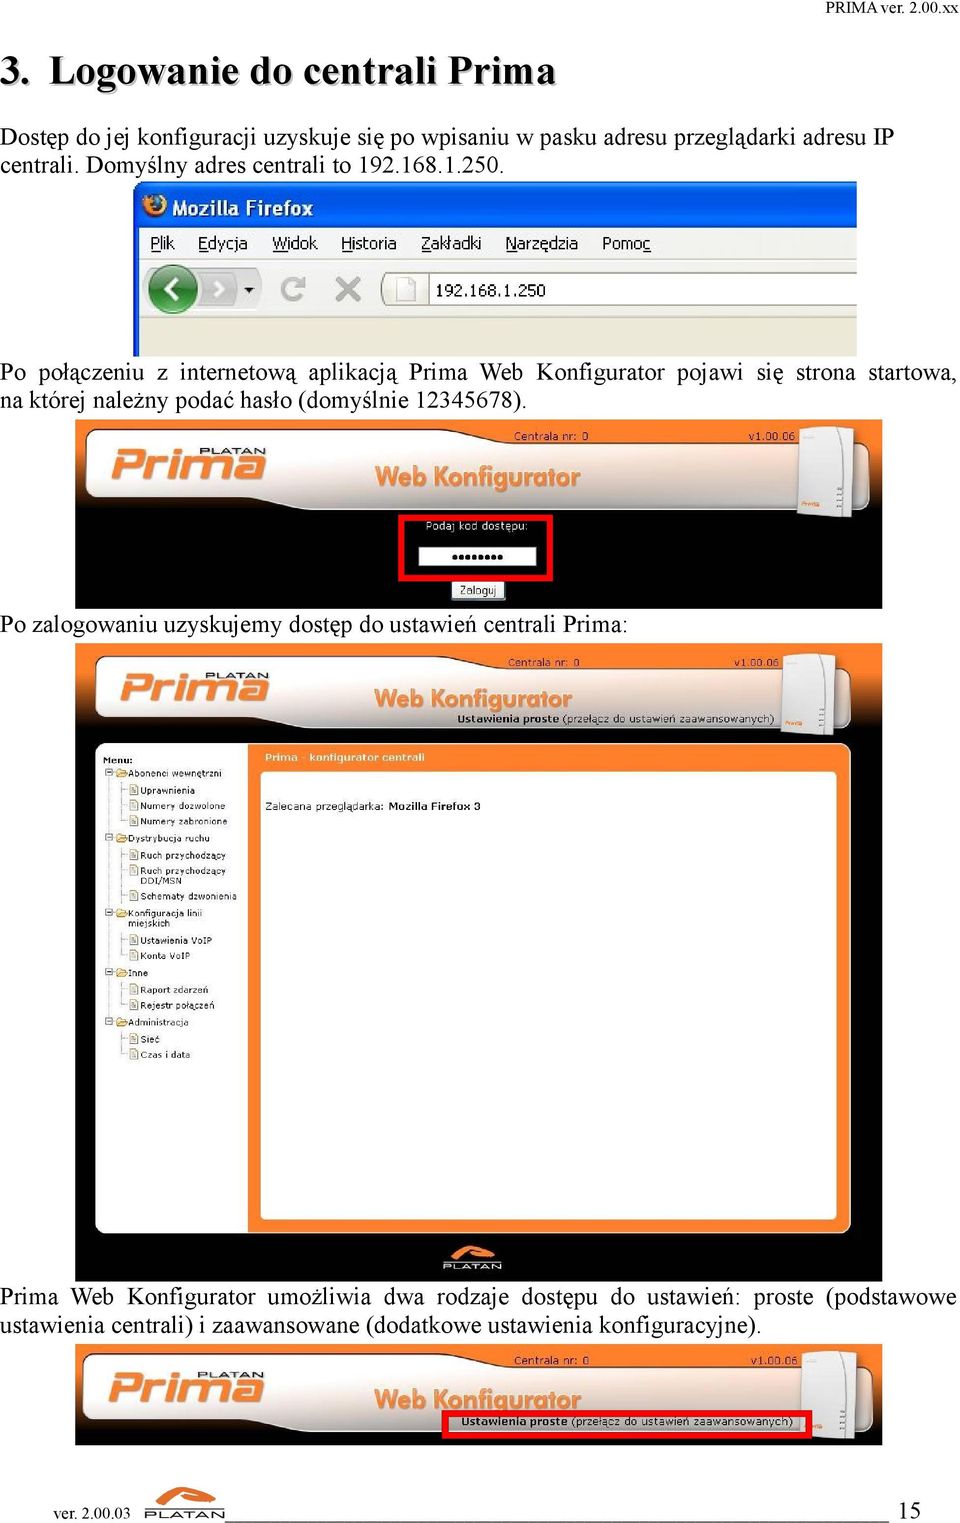 Po połączeniu z internetową aplikacją Prima Web Konfigurator pojawi się strona startowa, na której należny podać hasło (domyślnie